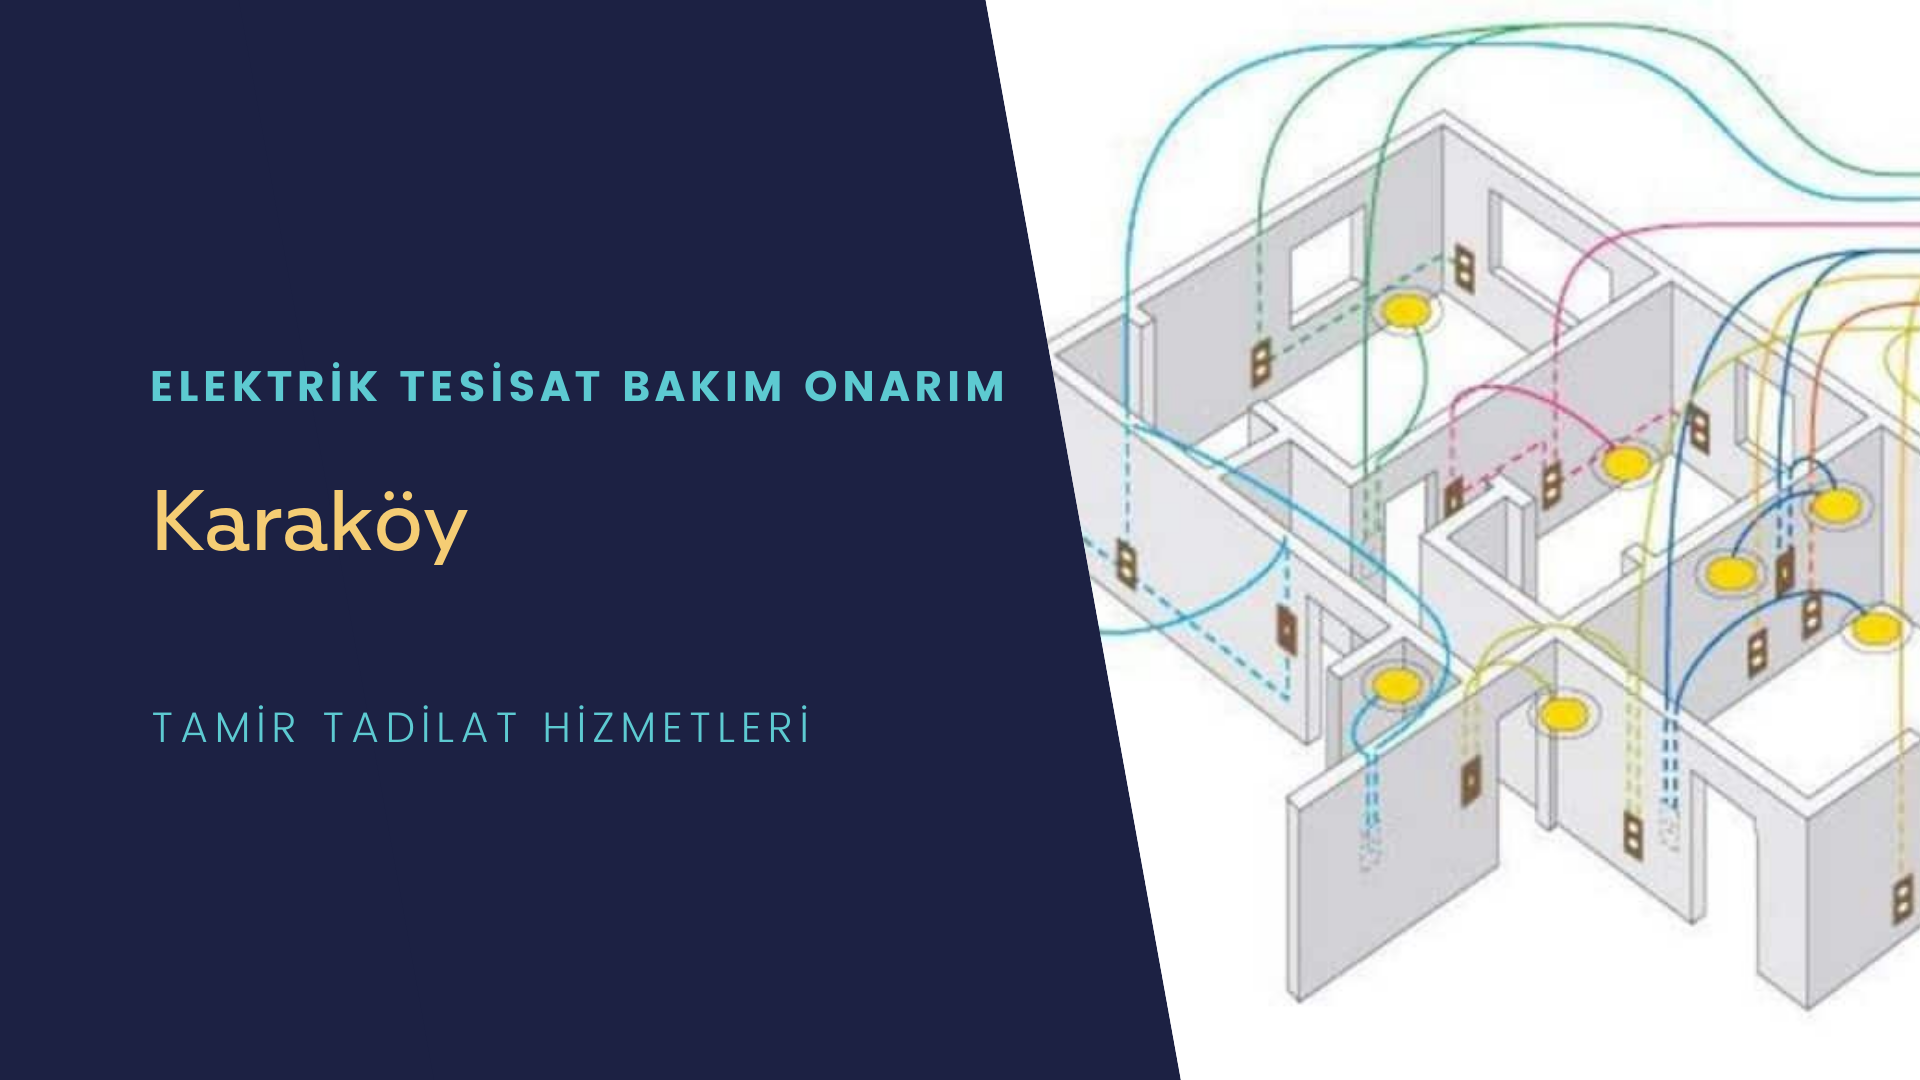 Karaköy'de elektrik tesisatı ustalarımı arıyorsunuz doğru adrestenizi Karaköy elektrik tesisatı ustalarımız 7/24 sizlere hizmet vermekten mutluluk duyar.